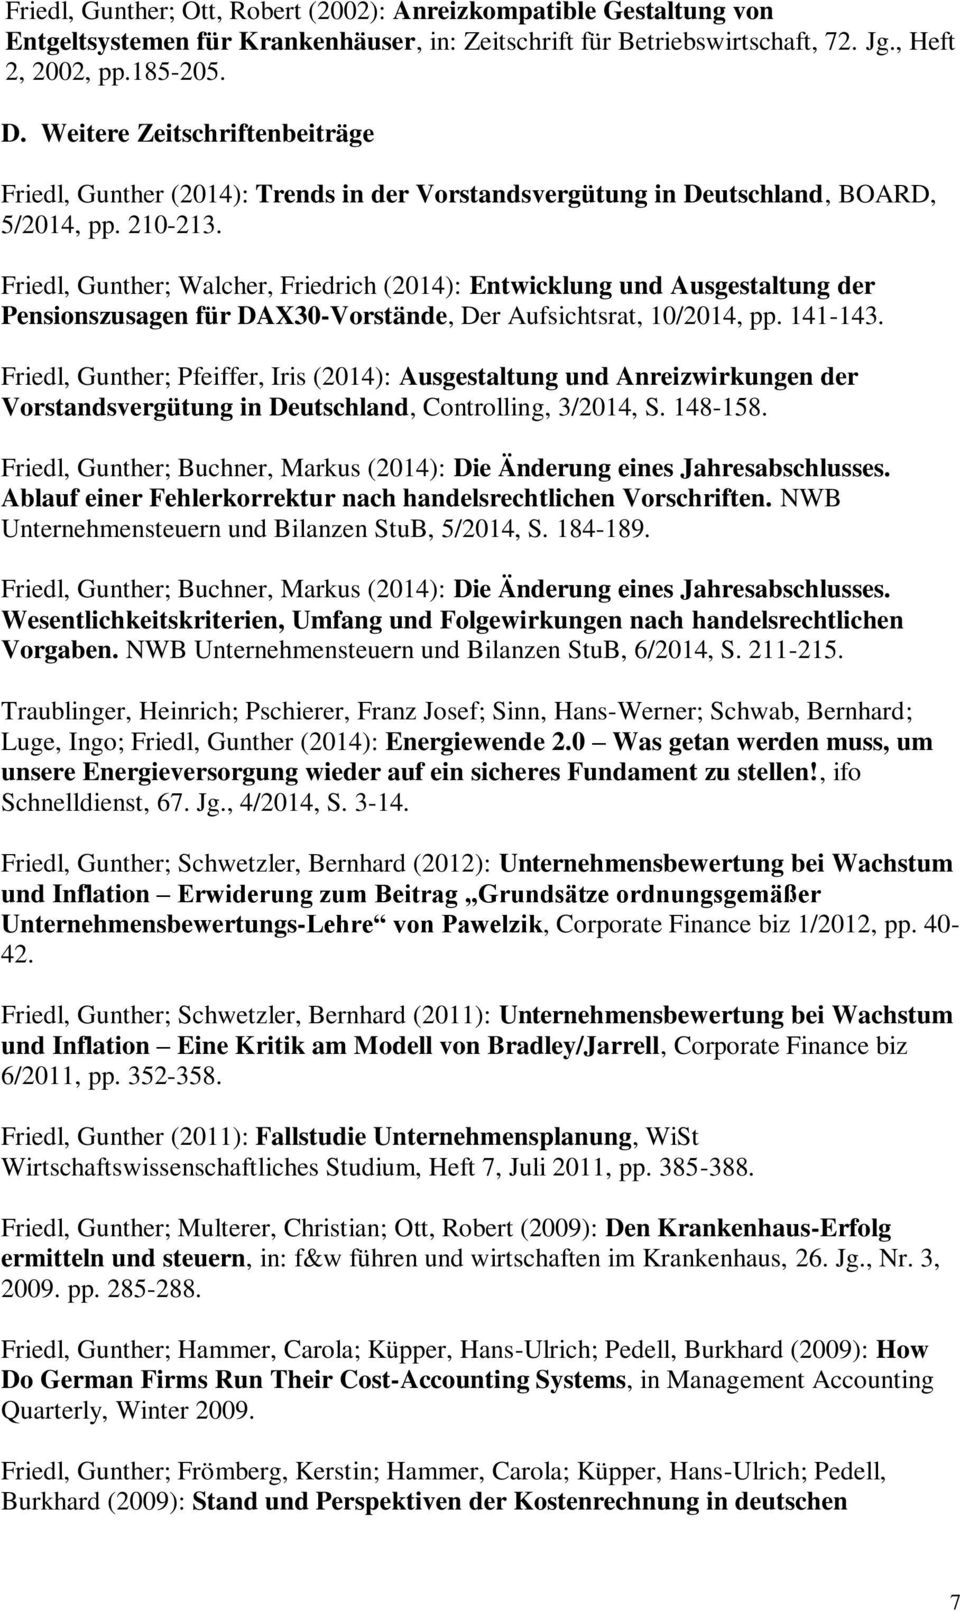 Friedl, Gunther; Walcher, Friedrich (2014): Entwicklung und Ausgestaltung der Pensionszusagen für DAX30-Vorstände, Der Aufsichtsrat, 10/2014, pp. 141-143.